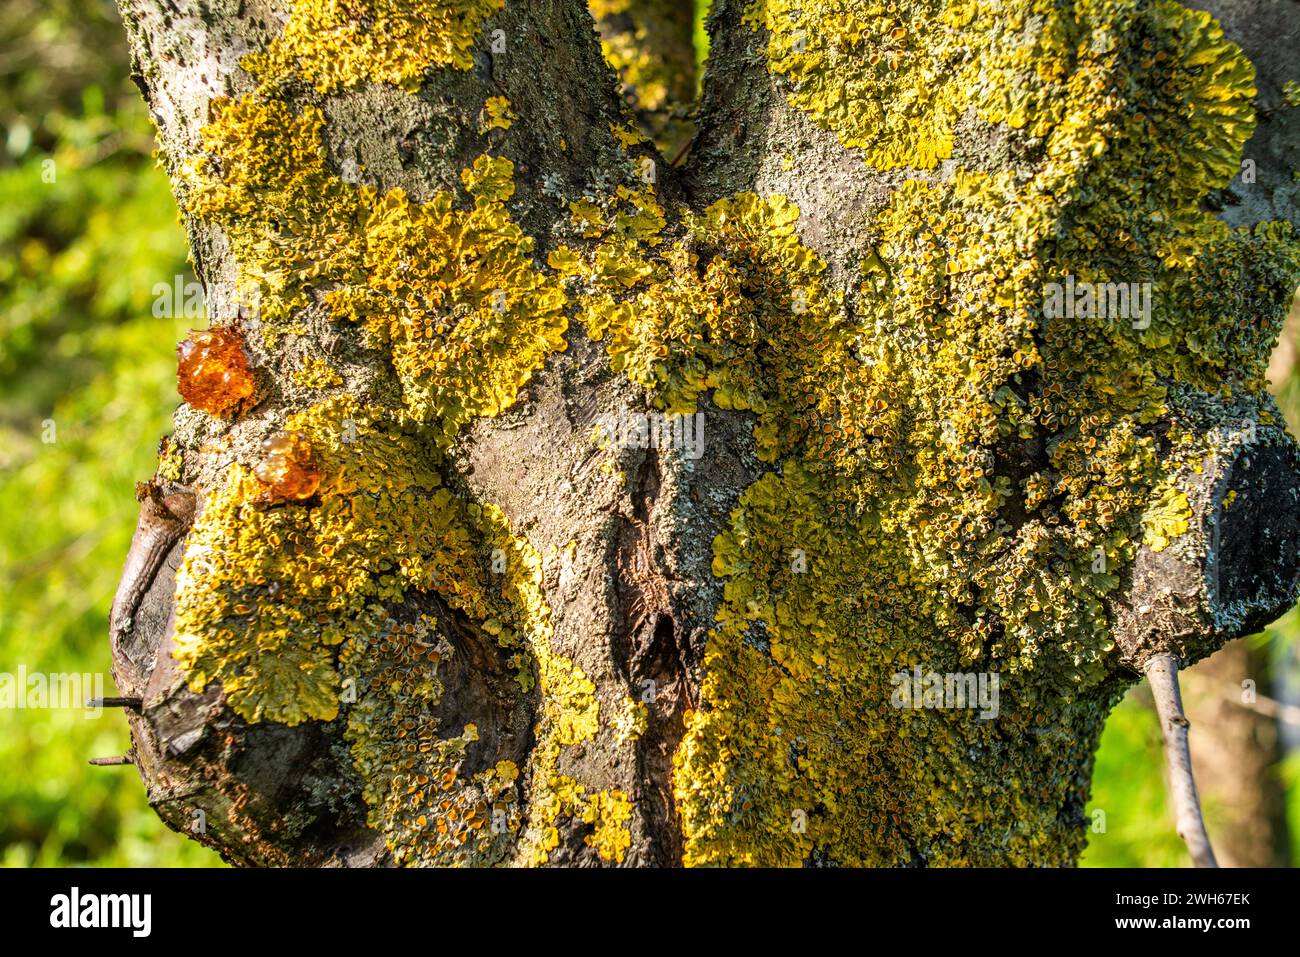 Die Palette der Natur entfaltet sich auf einem Baumstamm, der mit Flechten, Harz und Moos geschmückt ist, und zeigt das lebendige organische Wachstum in einem Waldökosystem. Stockfoto